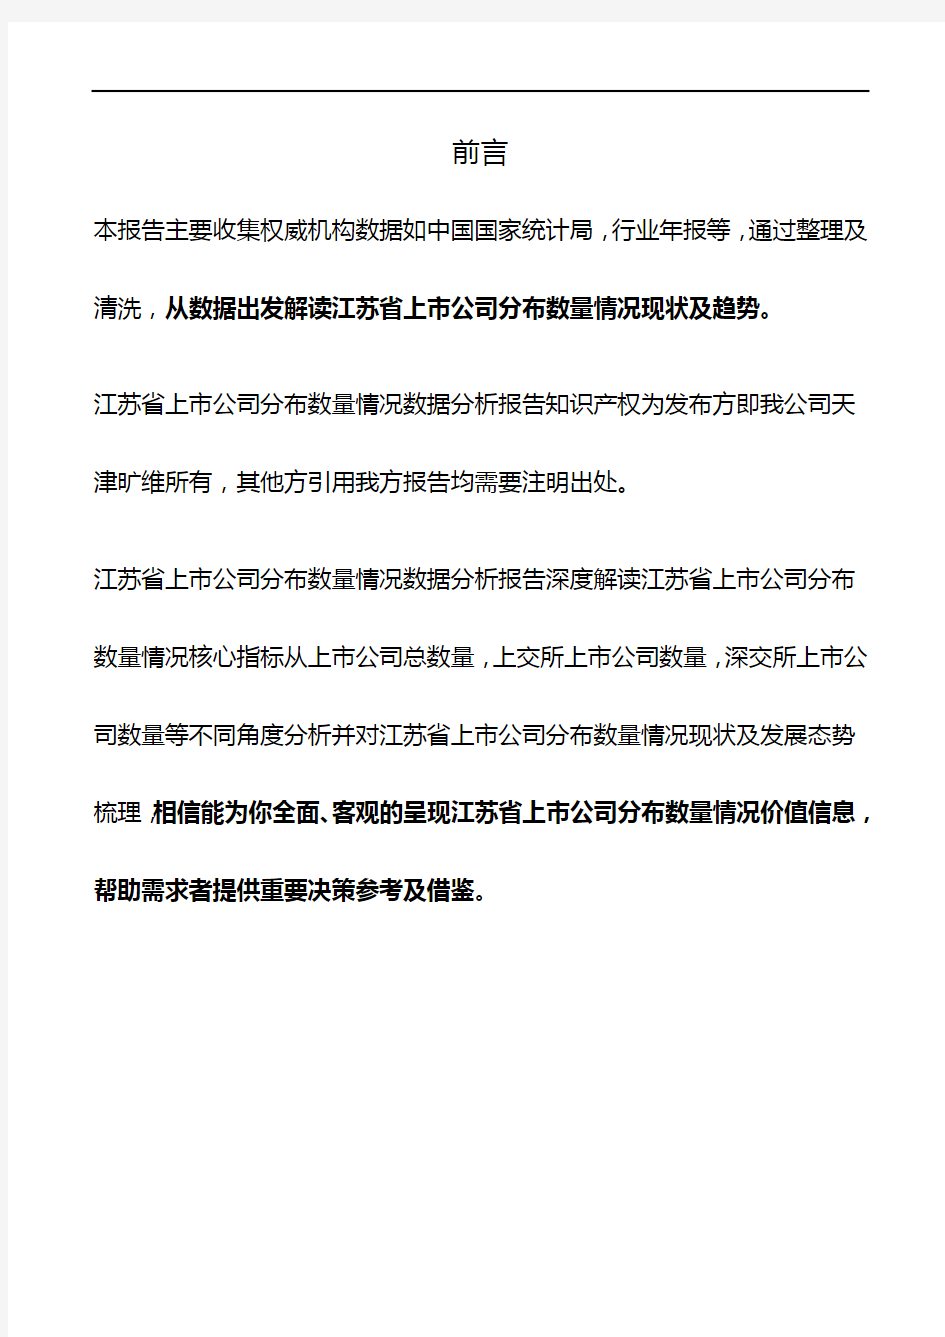 江苏省上市公司分布数量情况3年数据分析报告2019版